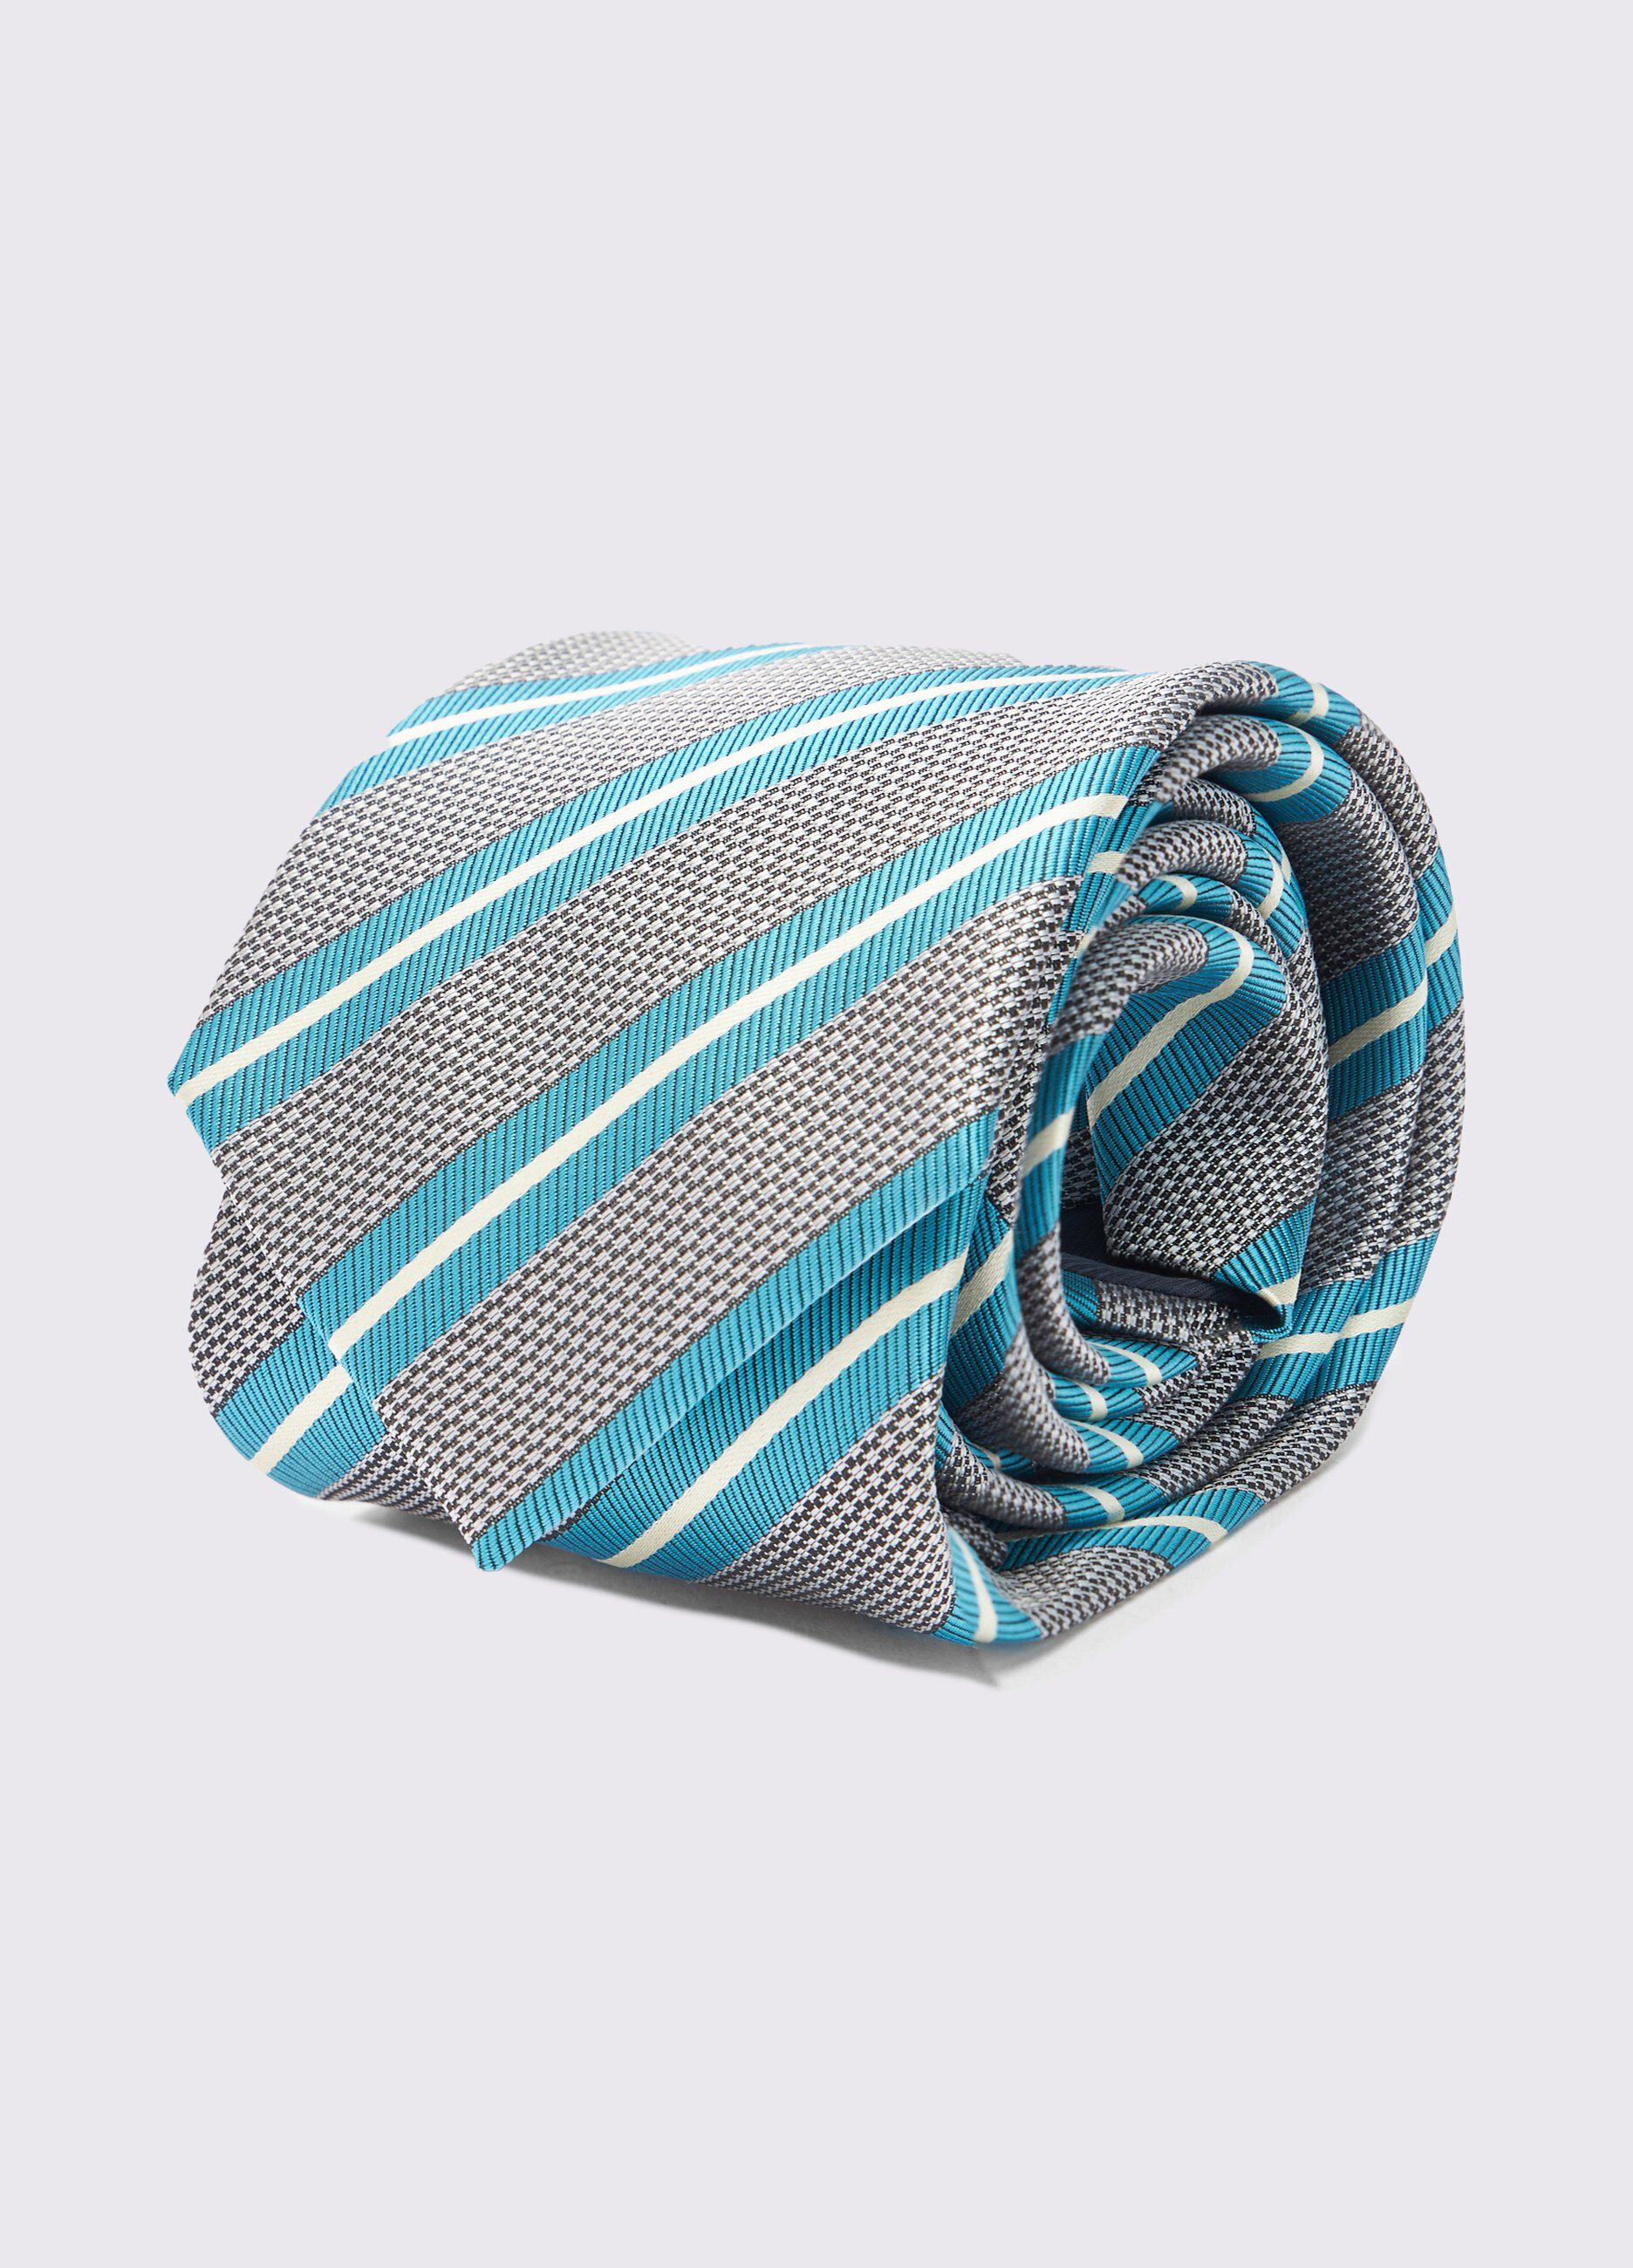 Cravatta rigata uomo_1